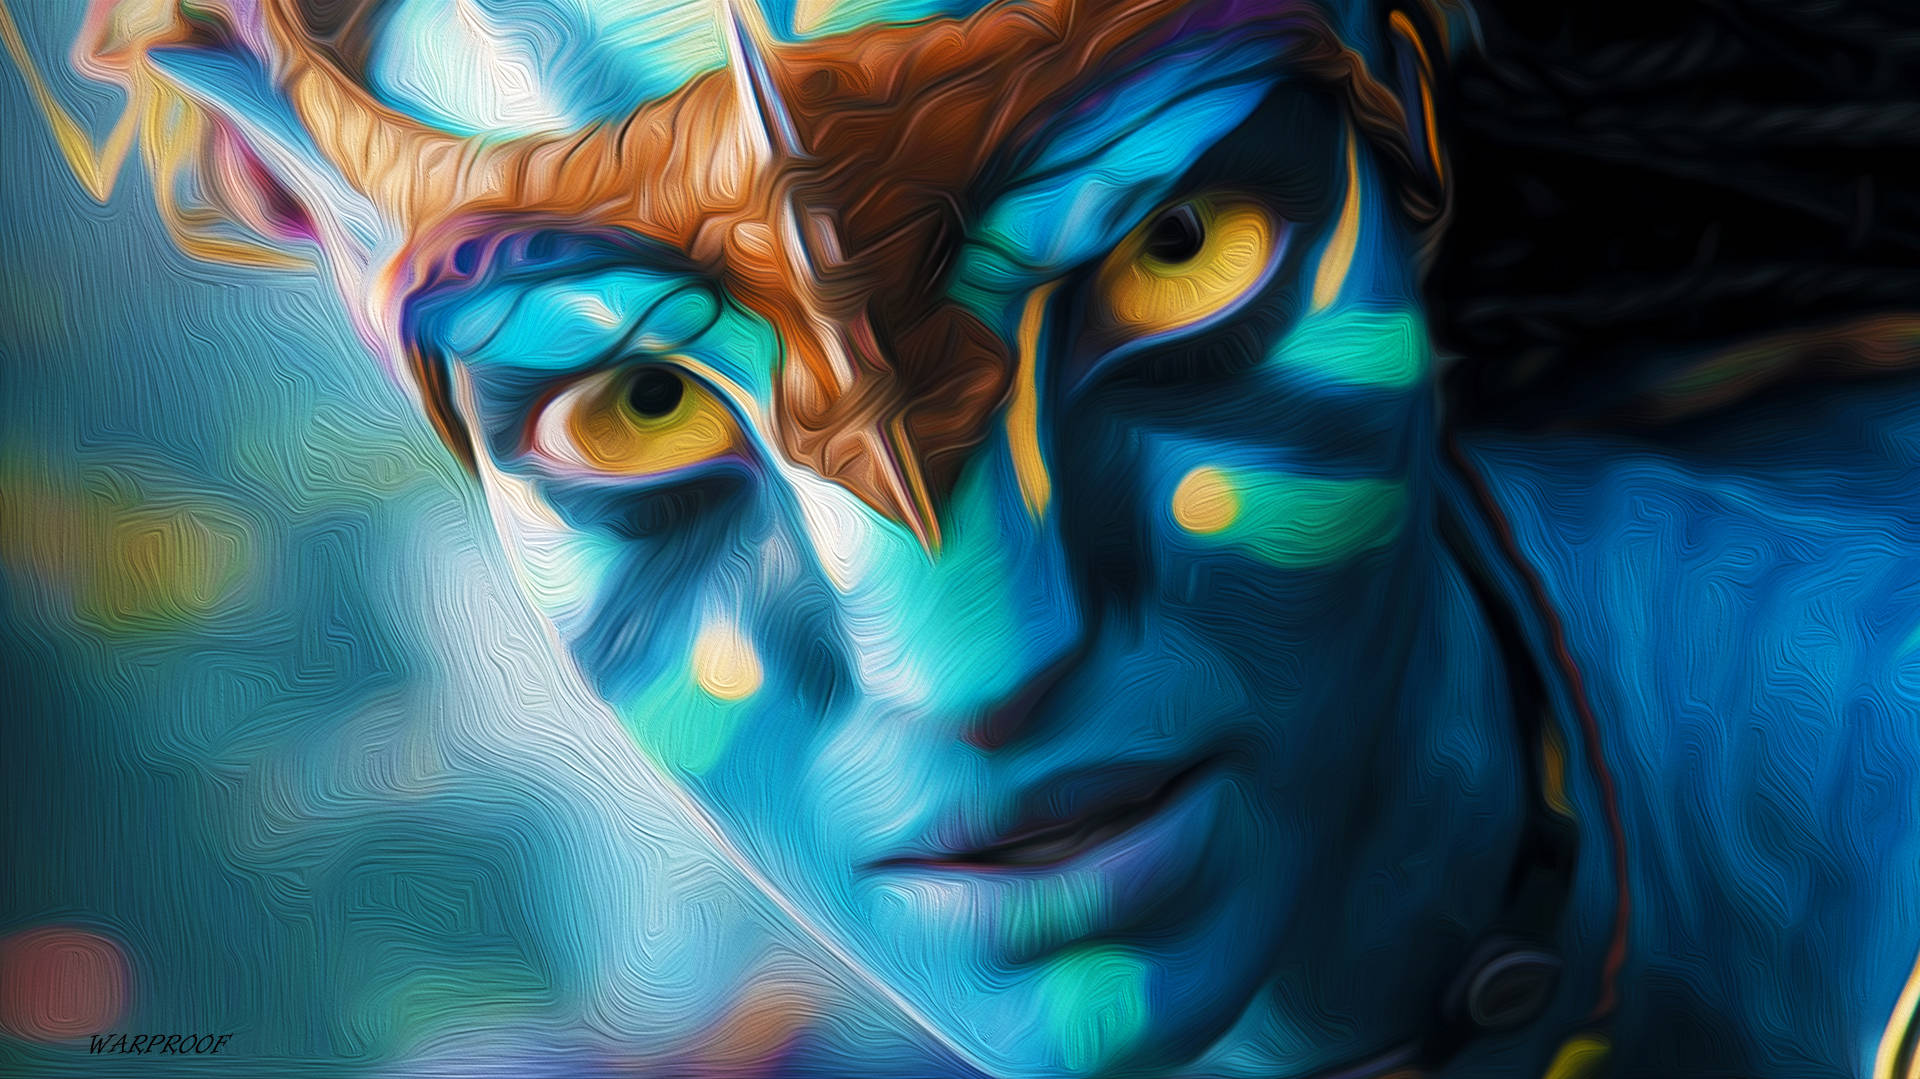 Avatar Neytiri Digital Art Background